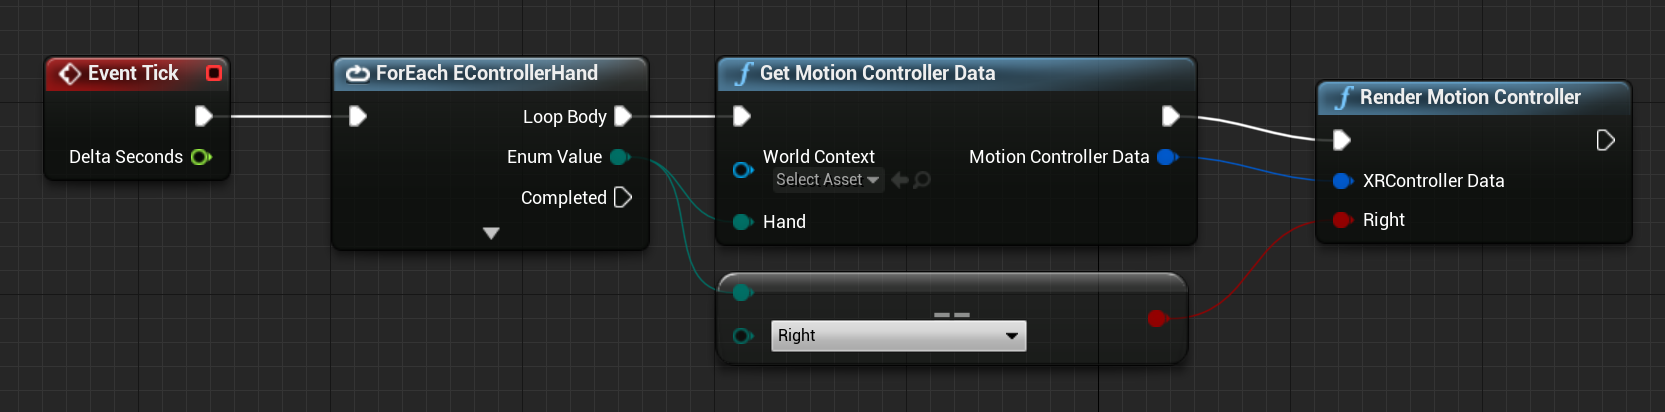 Progetto della funzione di dati get motion controller connessa per il rendering della funzione del controller di movimento